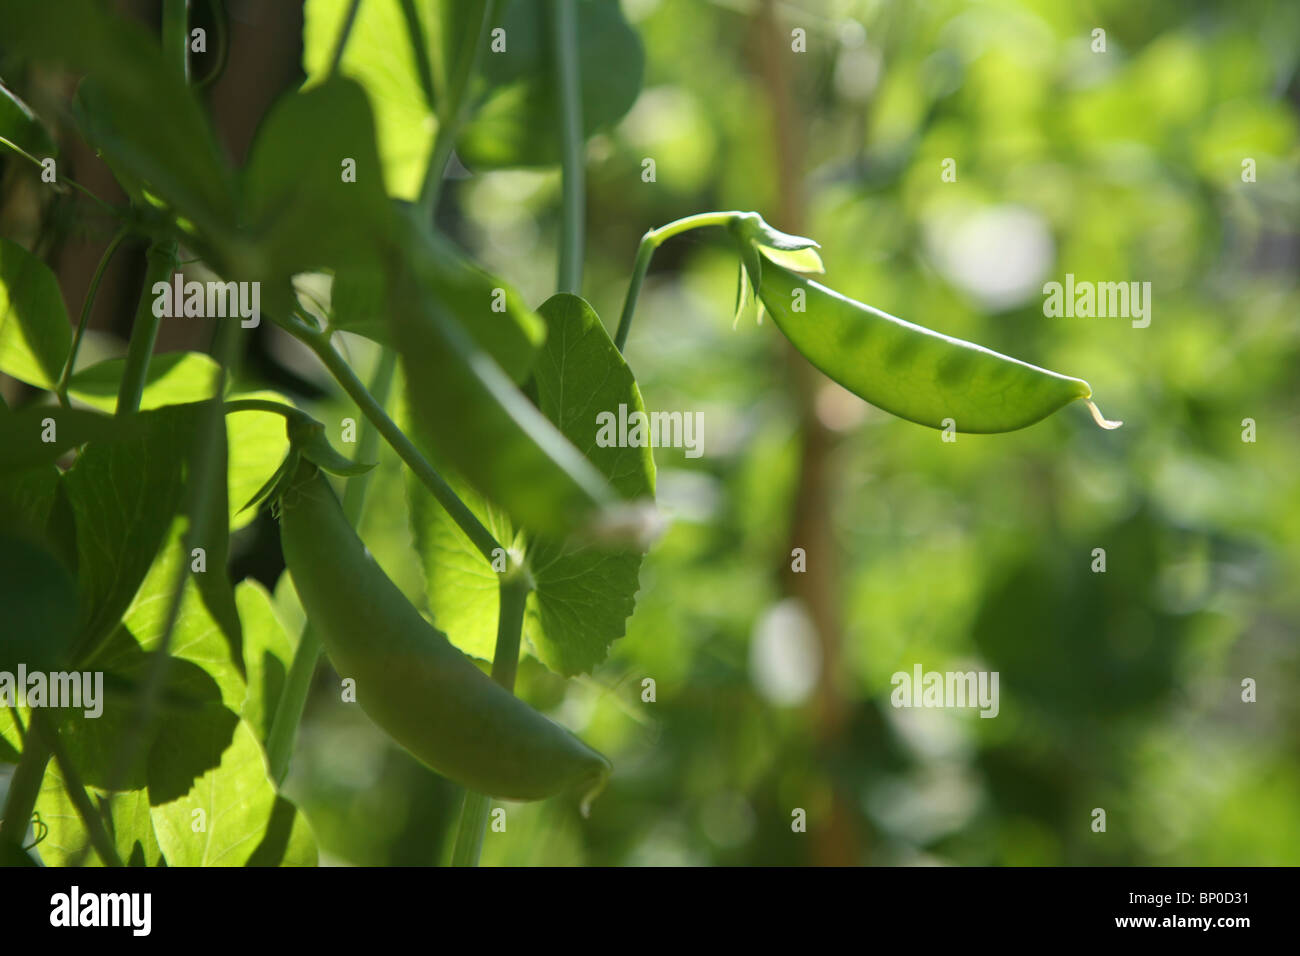 Pisum sativum var. saccharatum - Mange tout / Snow pea, growing outside on plant Stock Photo